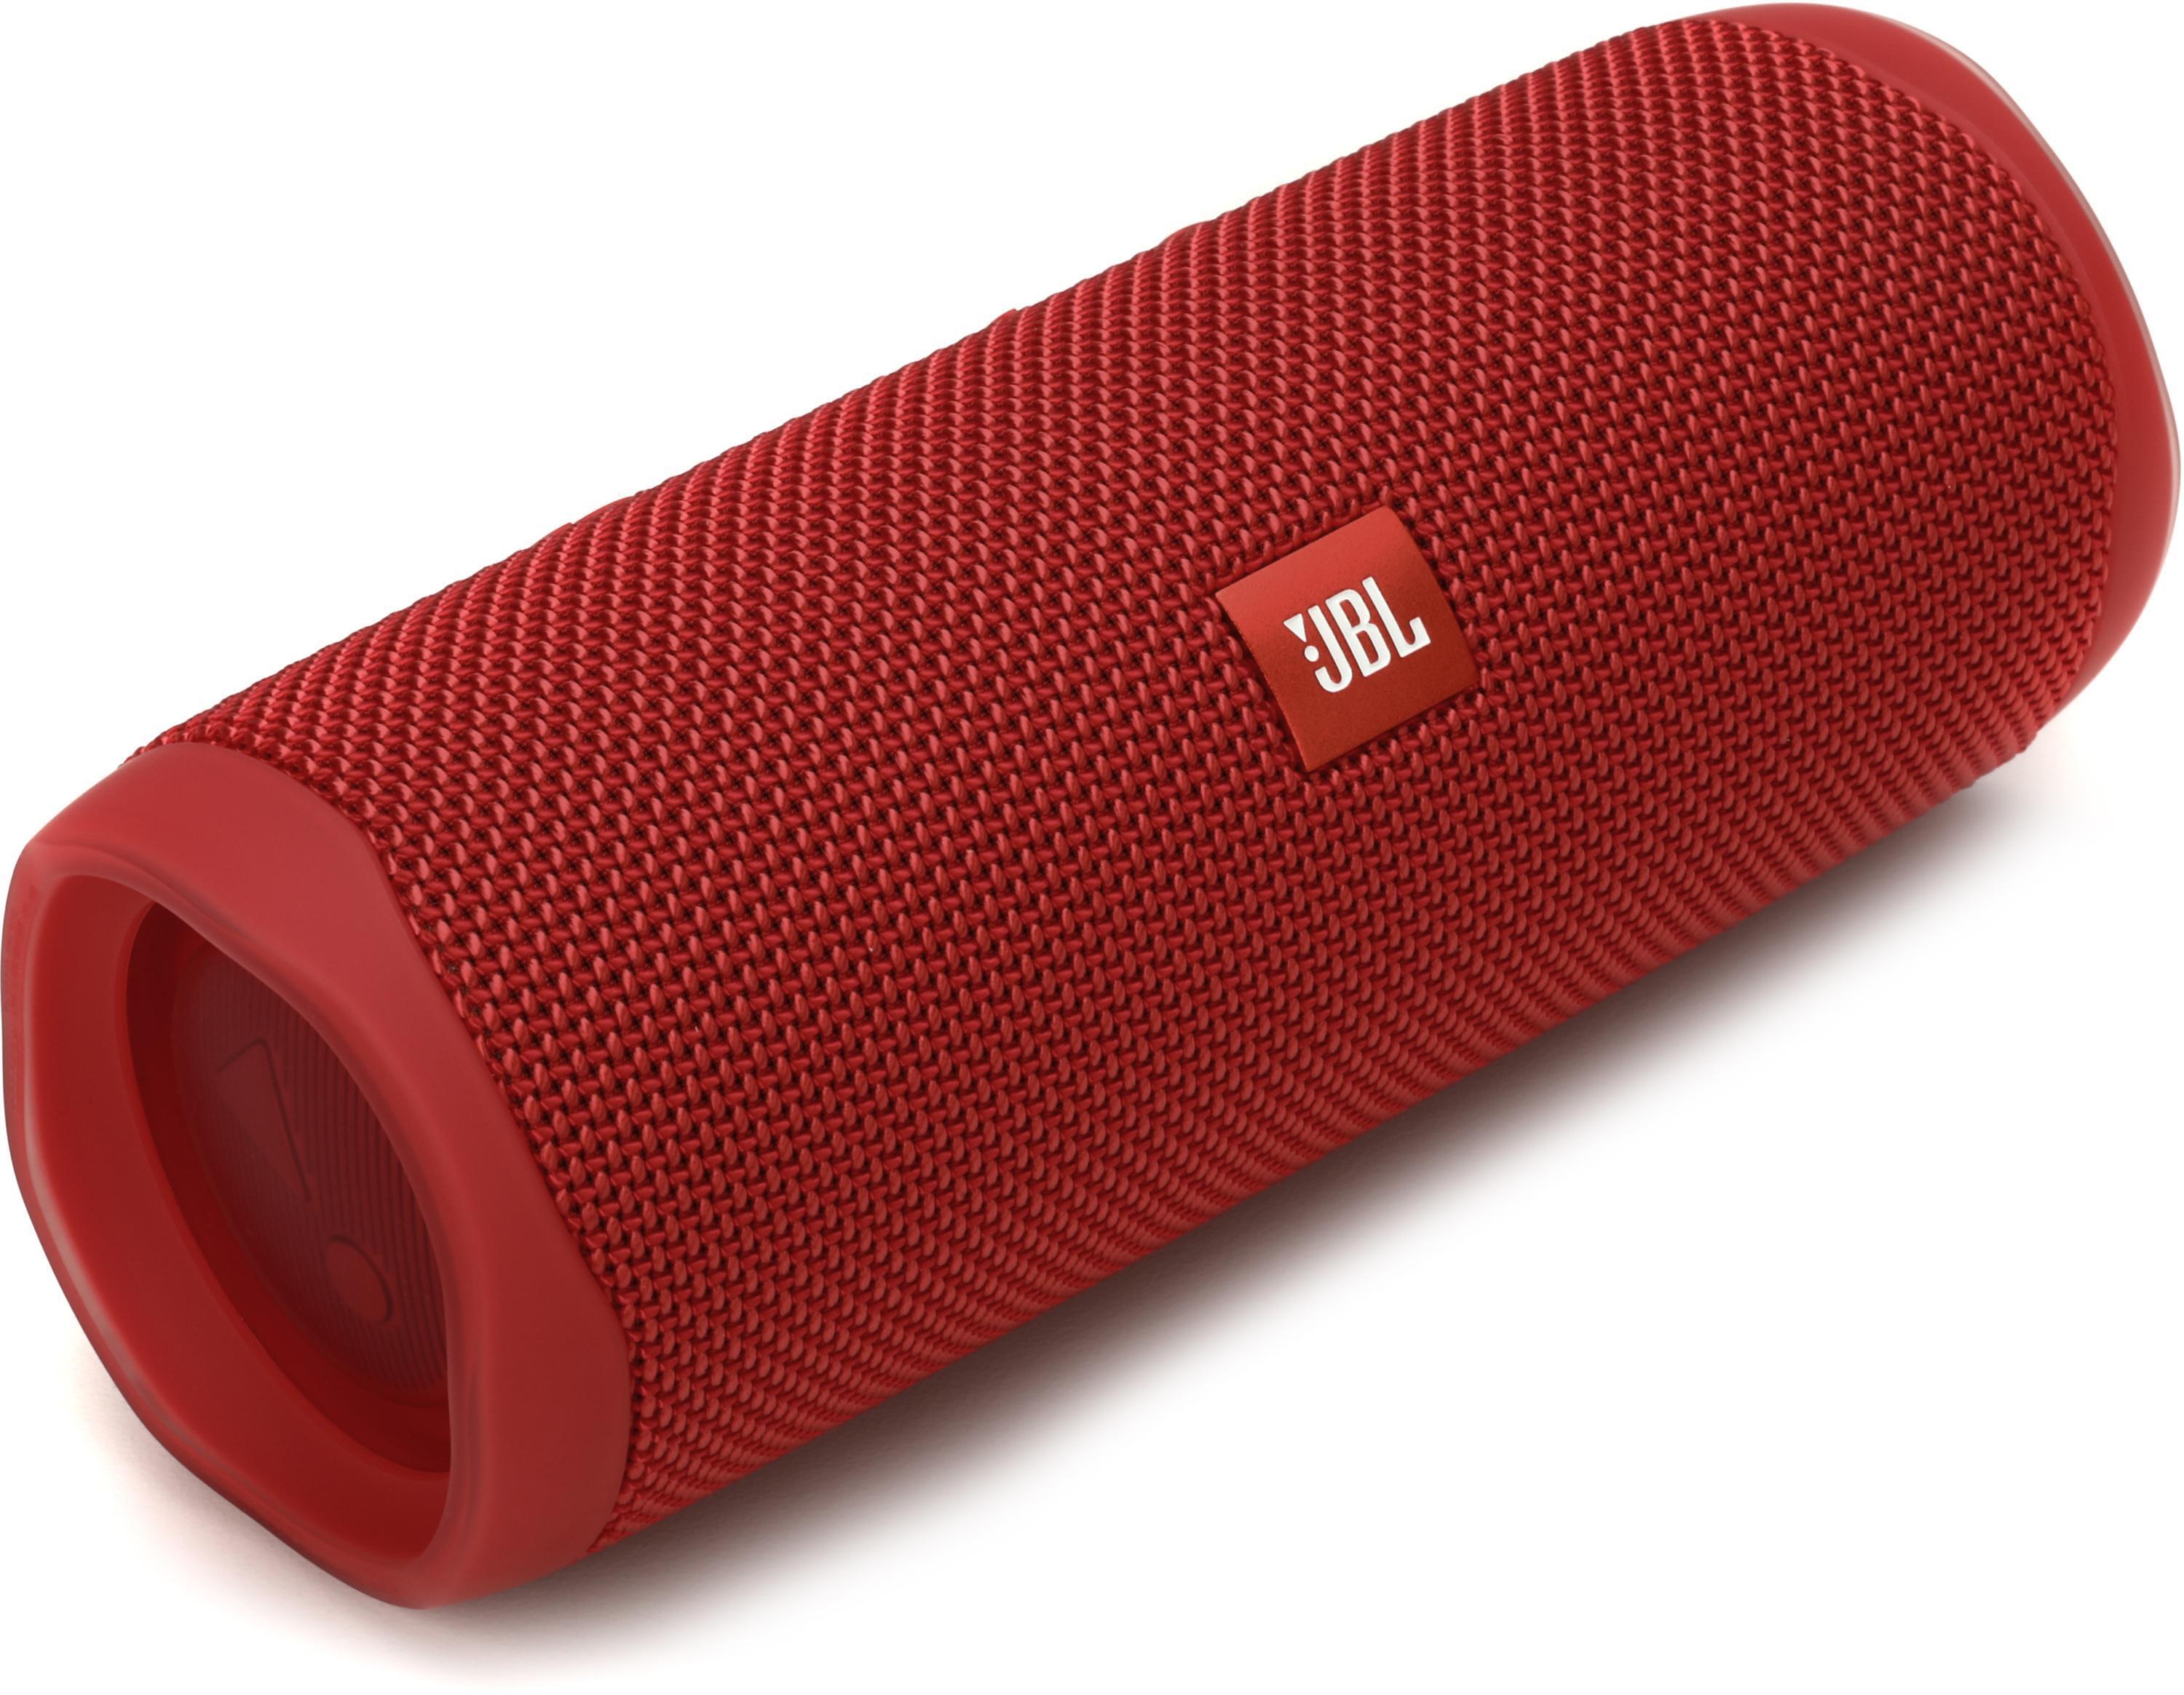 JBL Flip 5 Portable Waterproof Bluetooth Speaker - Red Reviews 